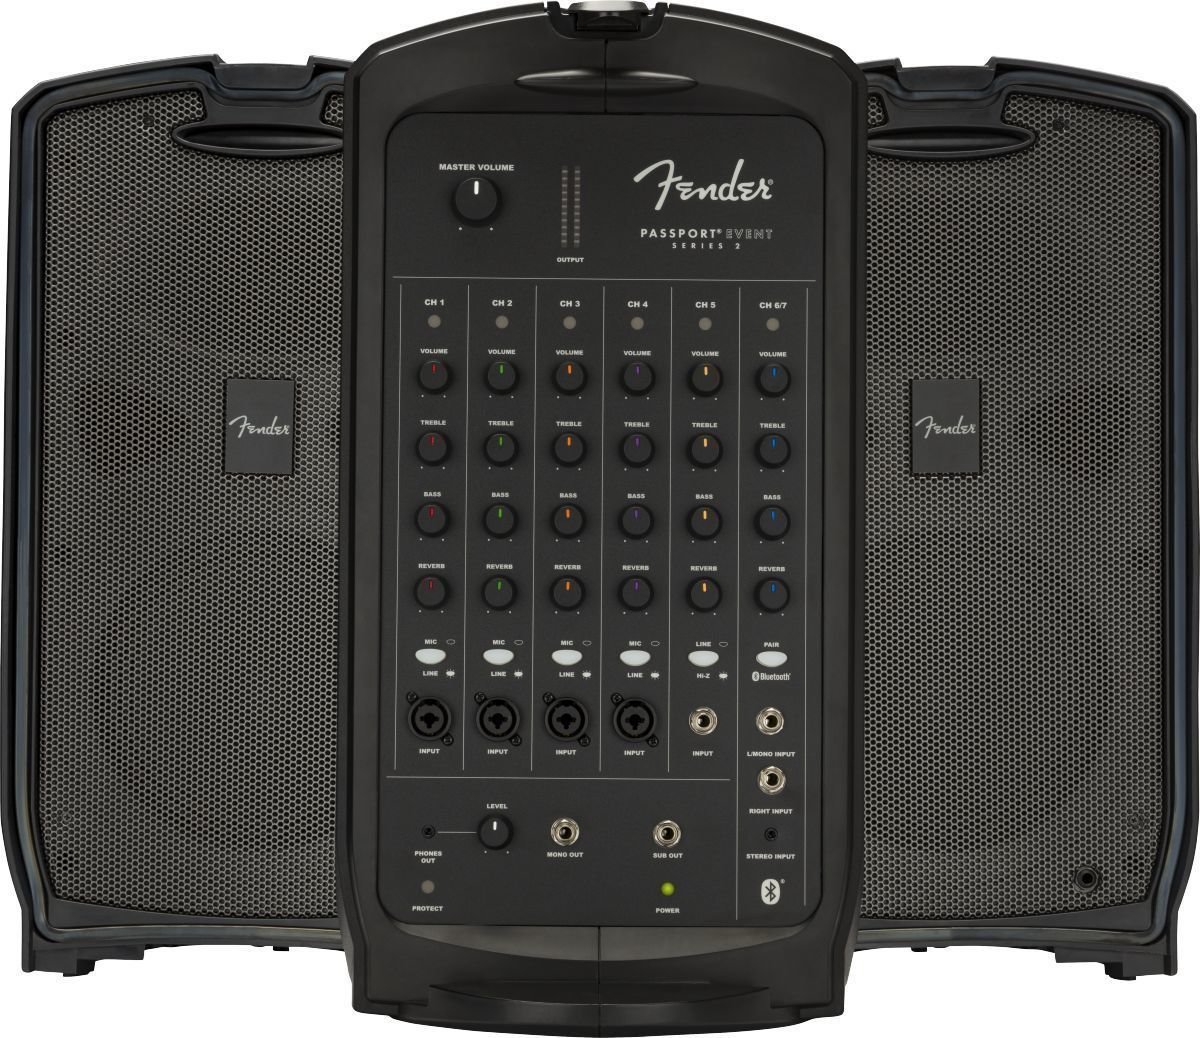 Přenosný ozvučovací PA systém  Fender Passport Event Series 2 Přenosný ozvučovací PA systém 